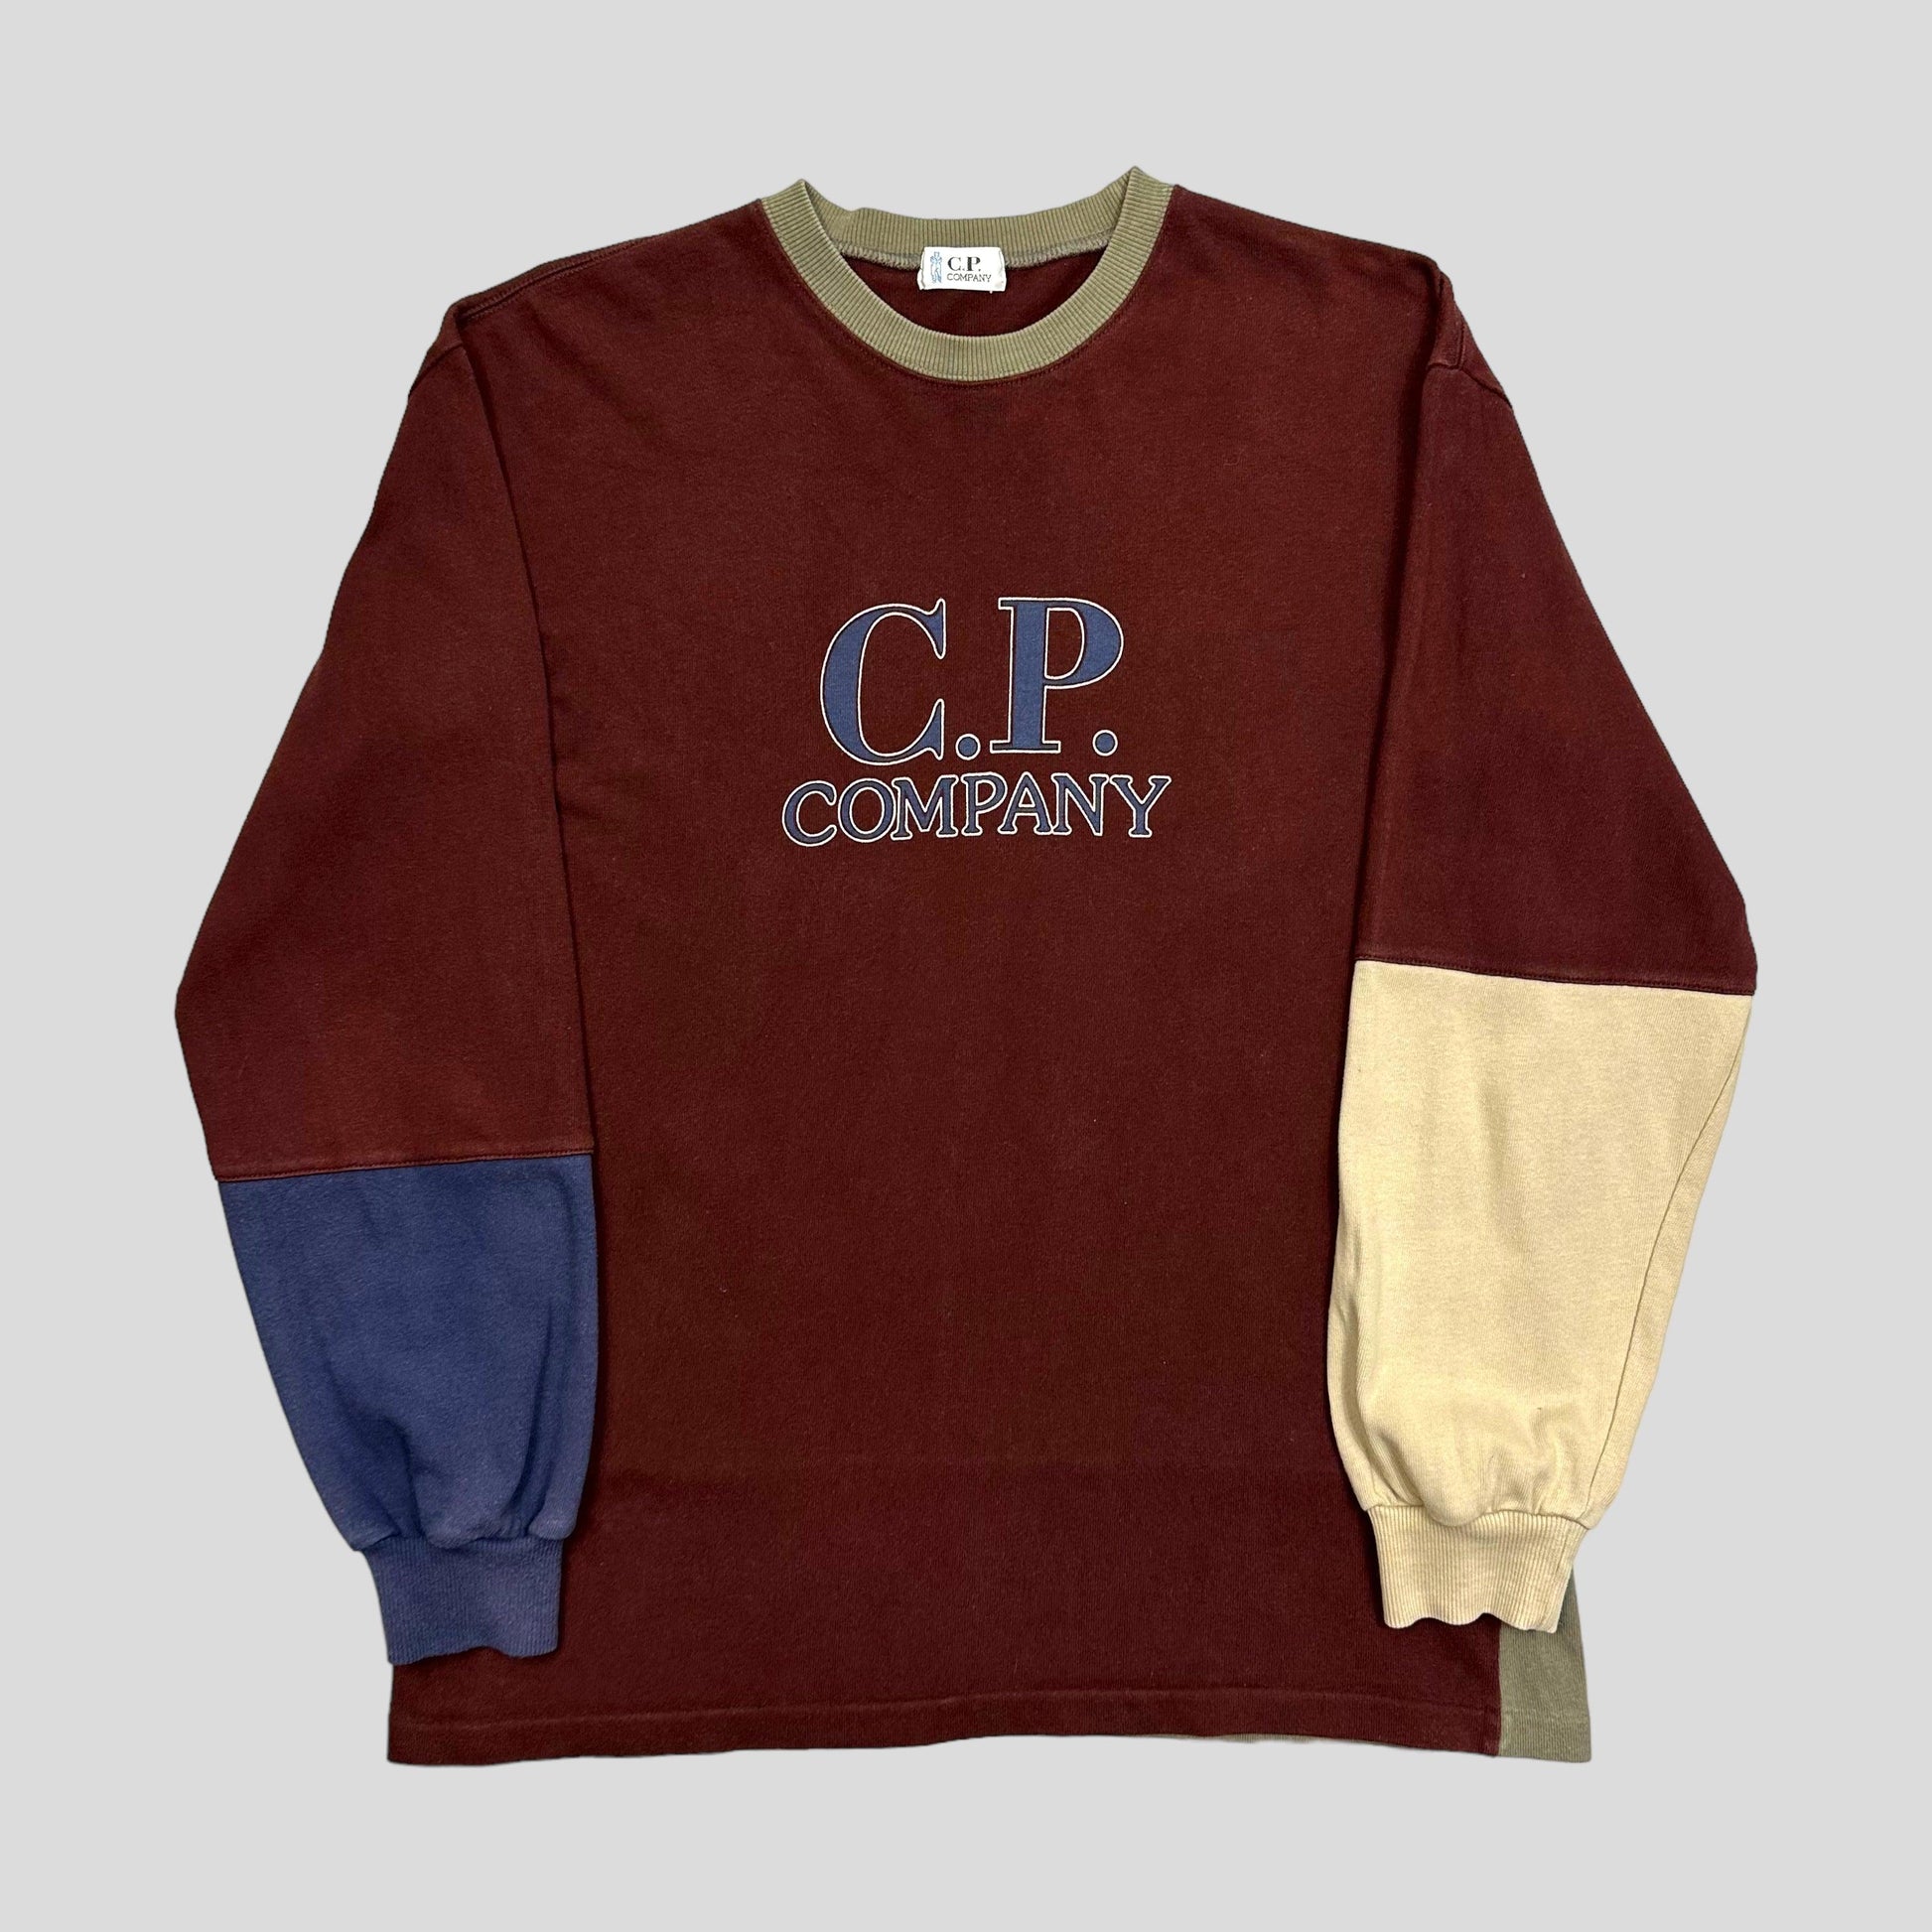 CP Company 90’s Colourblock Crewneck - M - Known Source